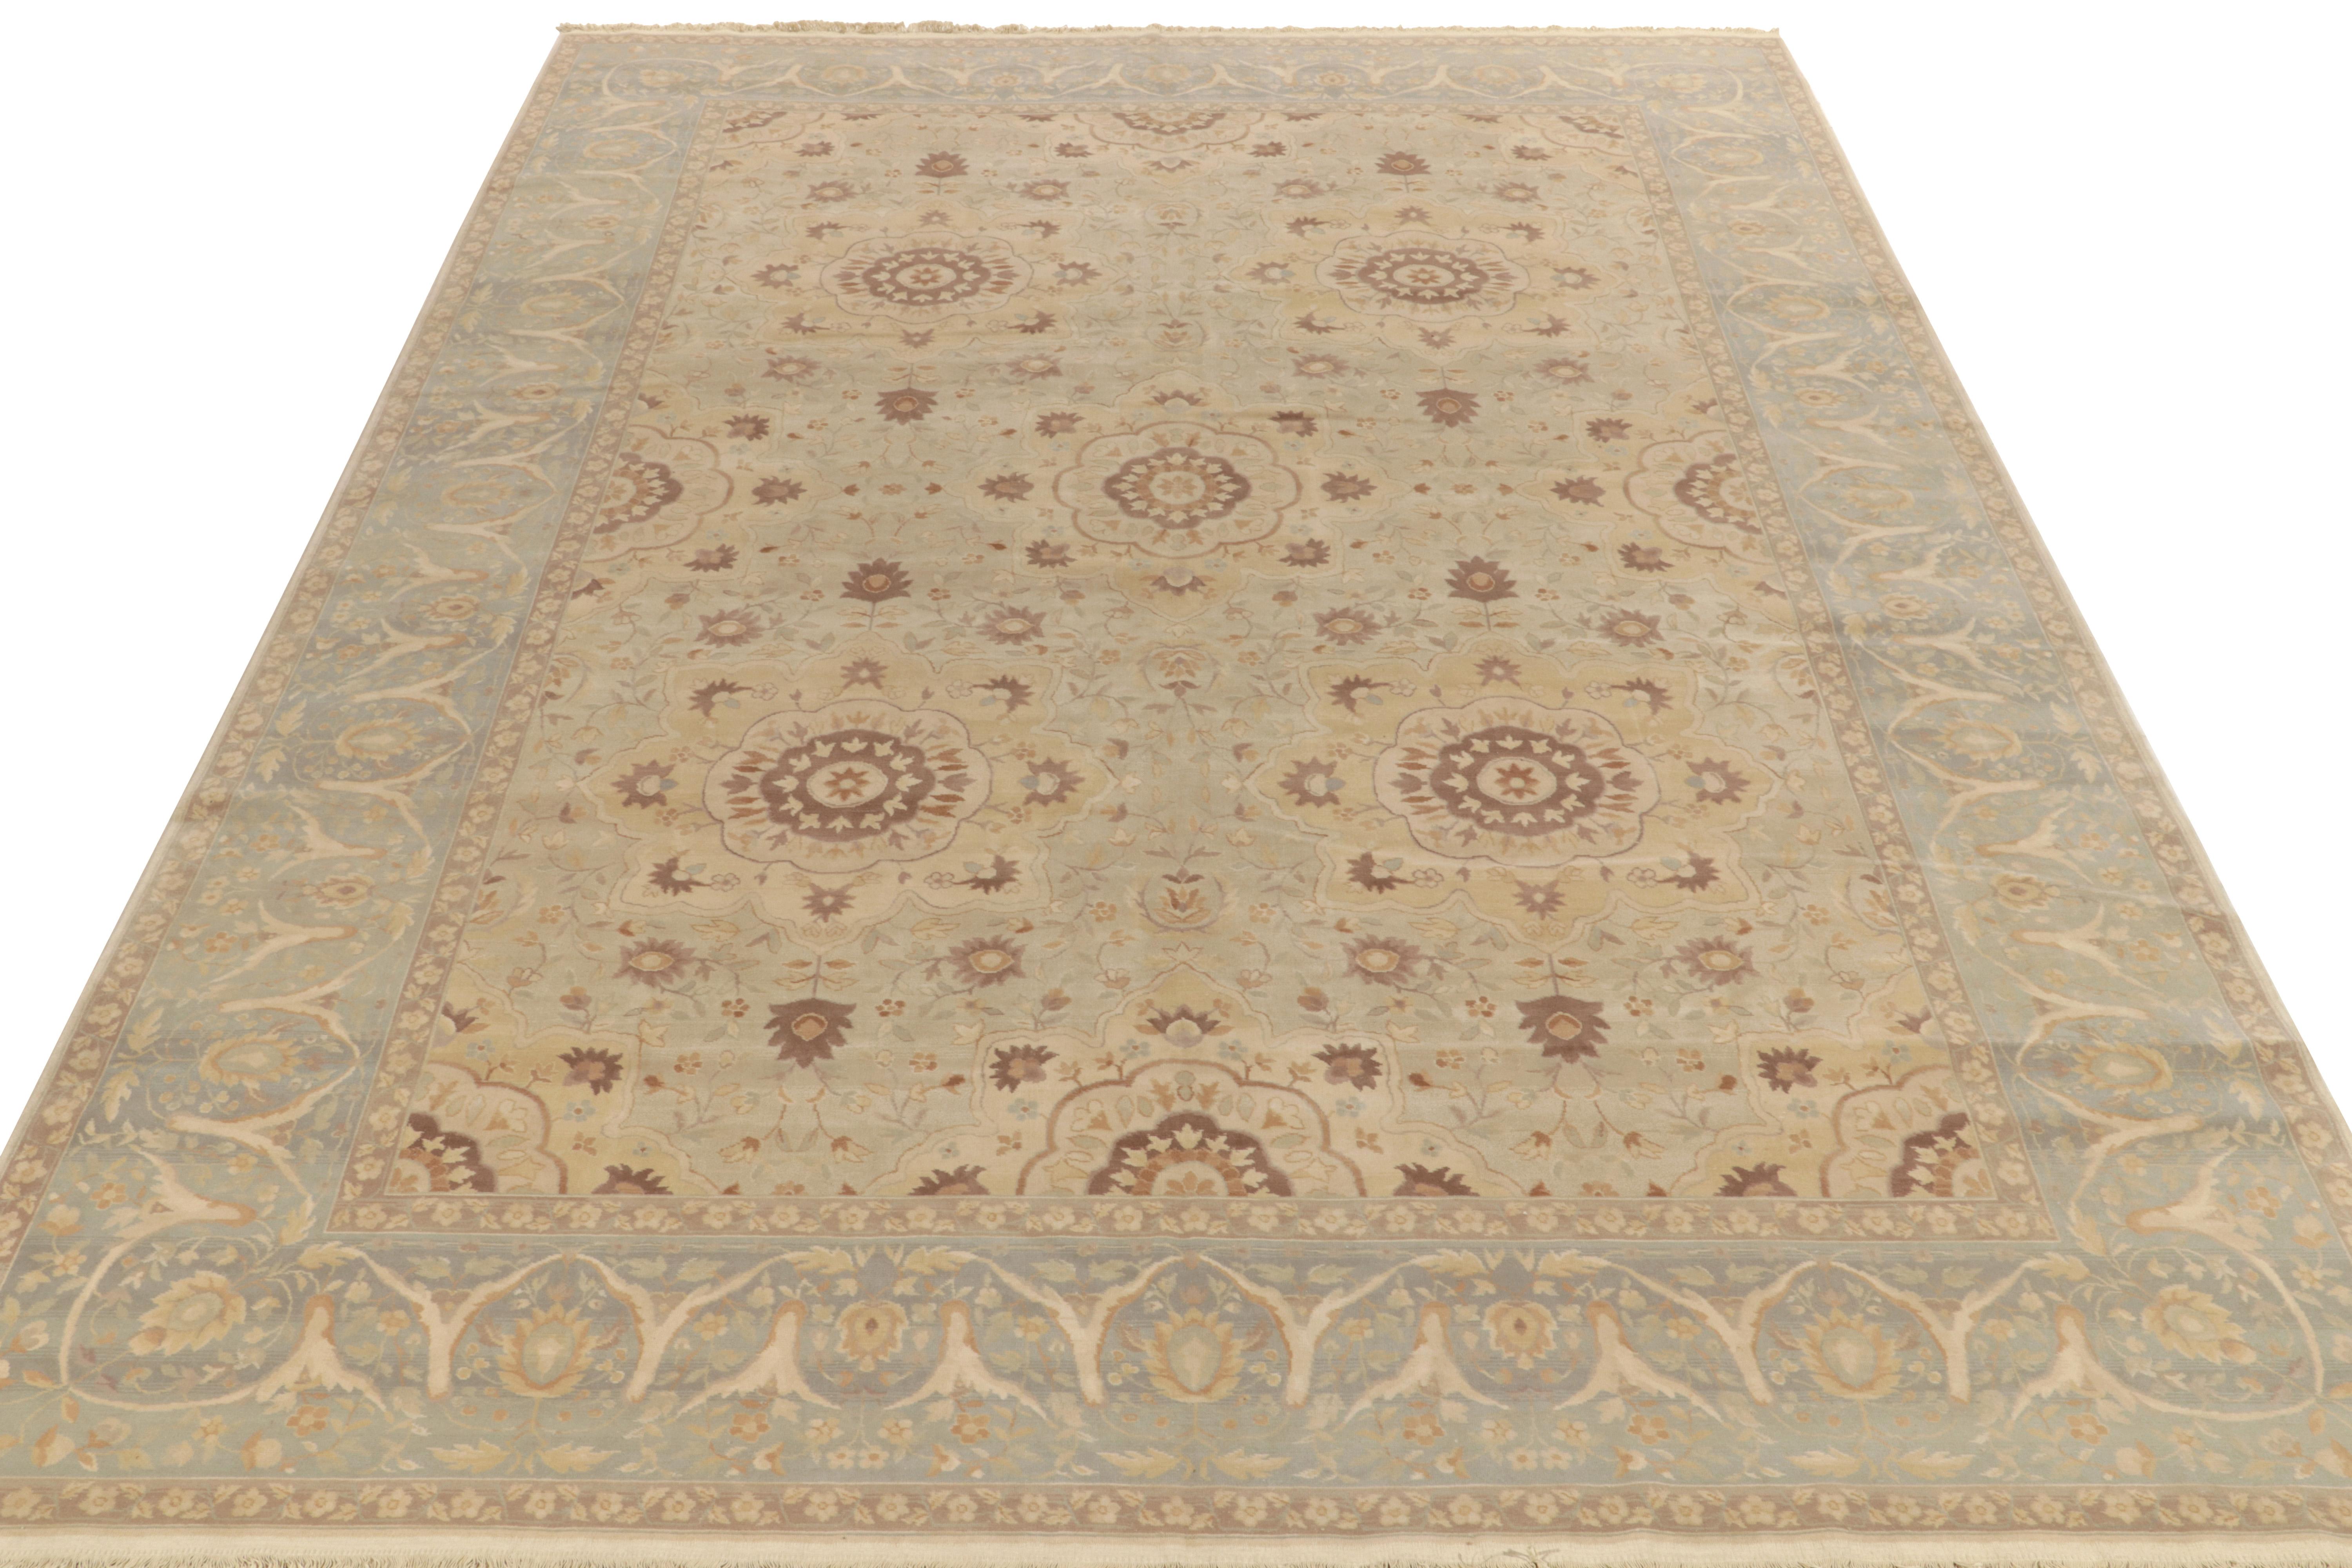 Dieser Teppich aus der Modern Classics Collection von Rug & Kilim ist ein komplizierter Teppich im Sultanabad-Stil, der sich an neoklassischen persischen Empfindungen orientiert. Das subtile florale Medaillonmuster spielt wunderschön mit einzigartig